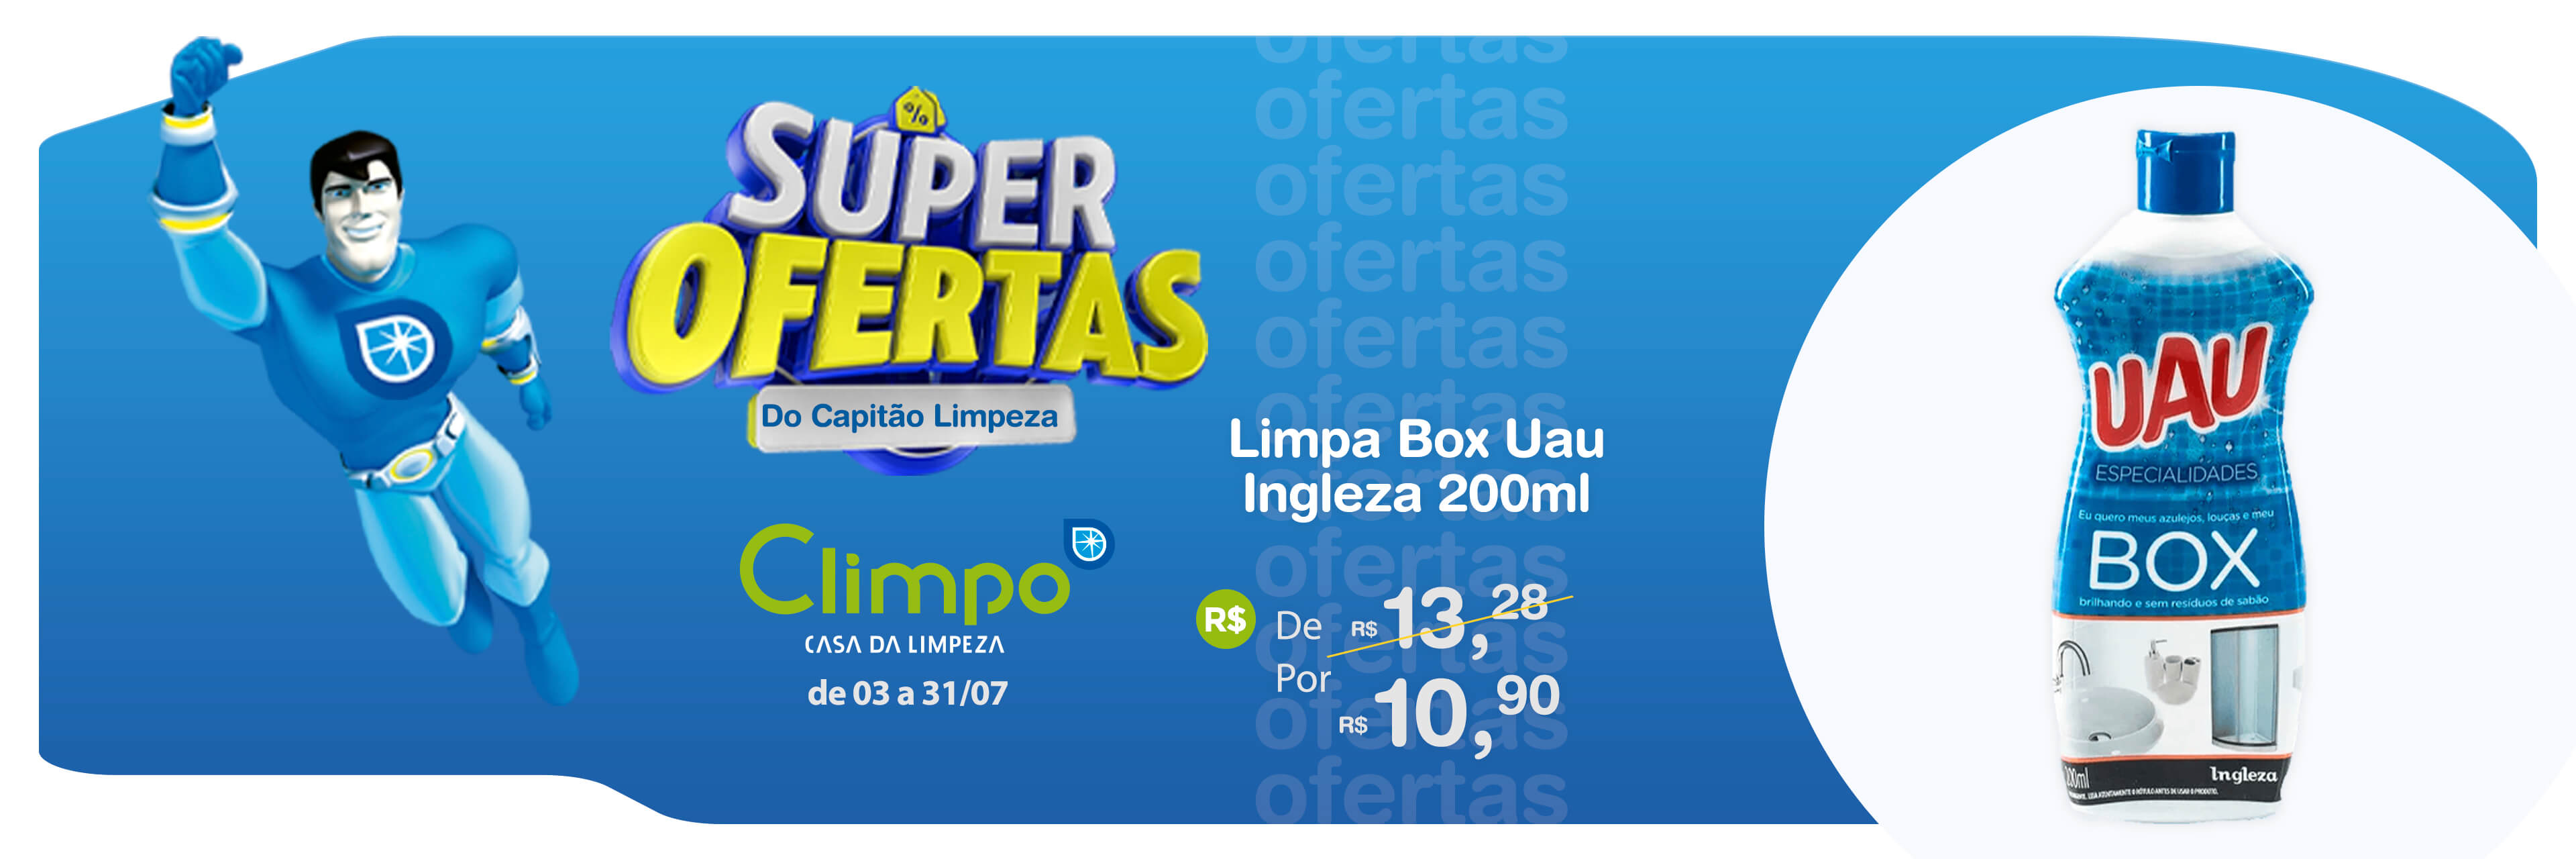 Banner Super Ofertas do Capitão Limpeza Limpa box uau 08